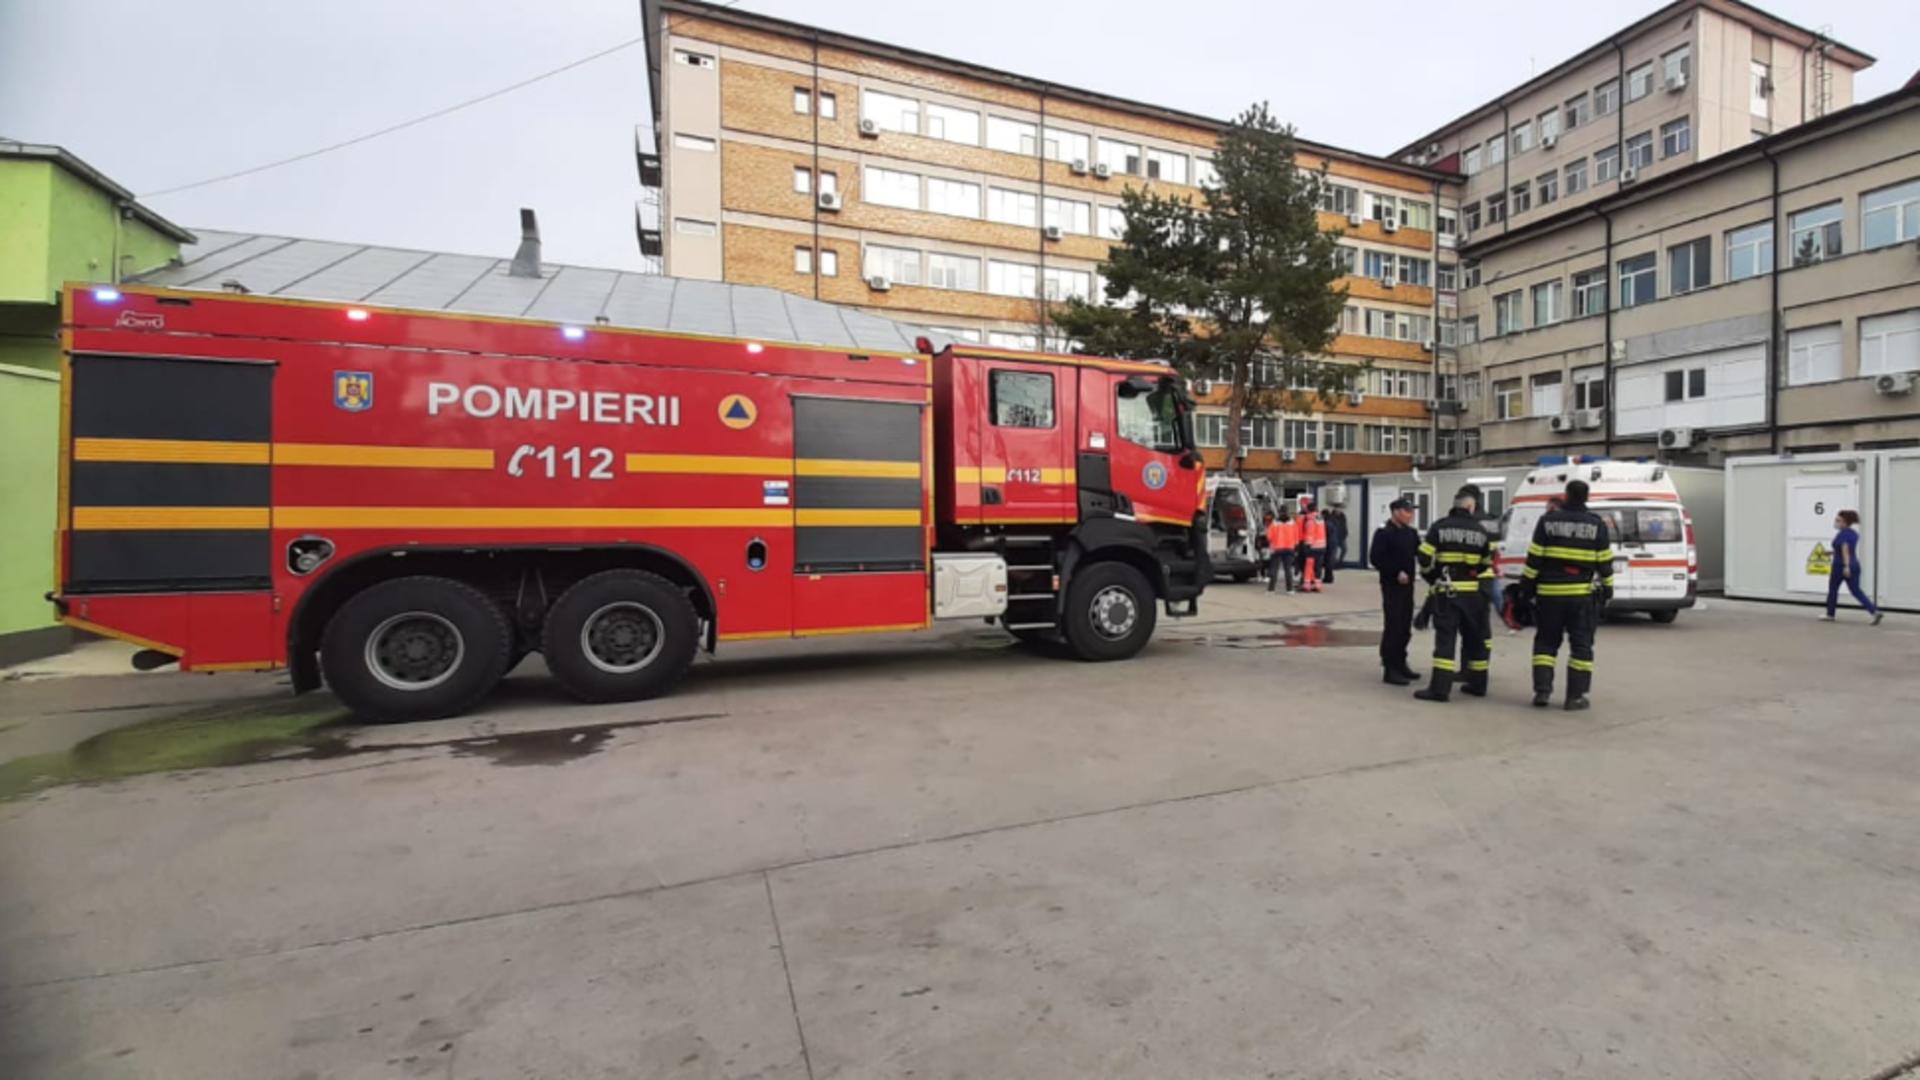 Alertă la Spitalul Județean Buzău, au fost mobilizate toate autospecialele pompierilor. 18 pacienți evacuați. Ce s-a întâmplat, de fapt? - FOTO/VIDEO